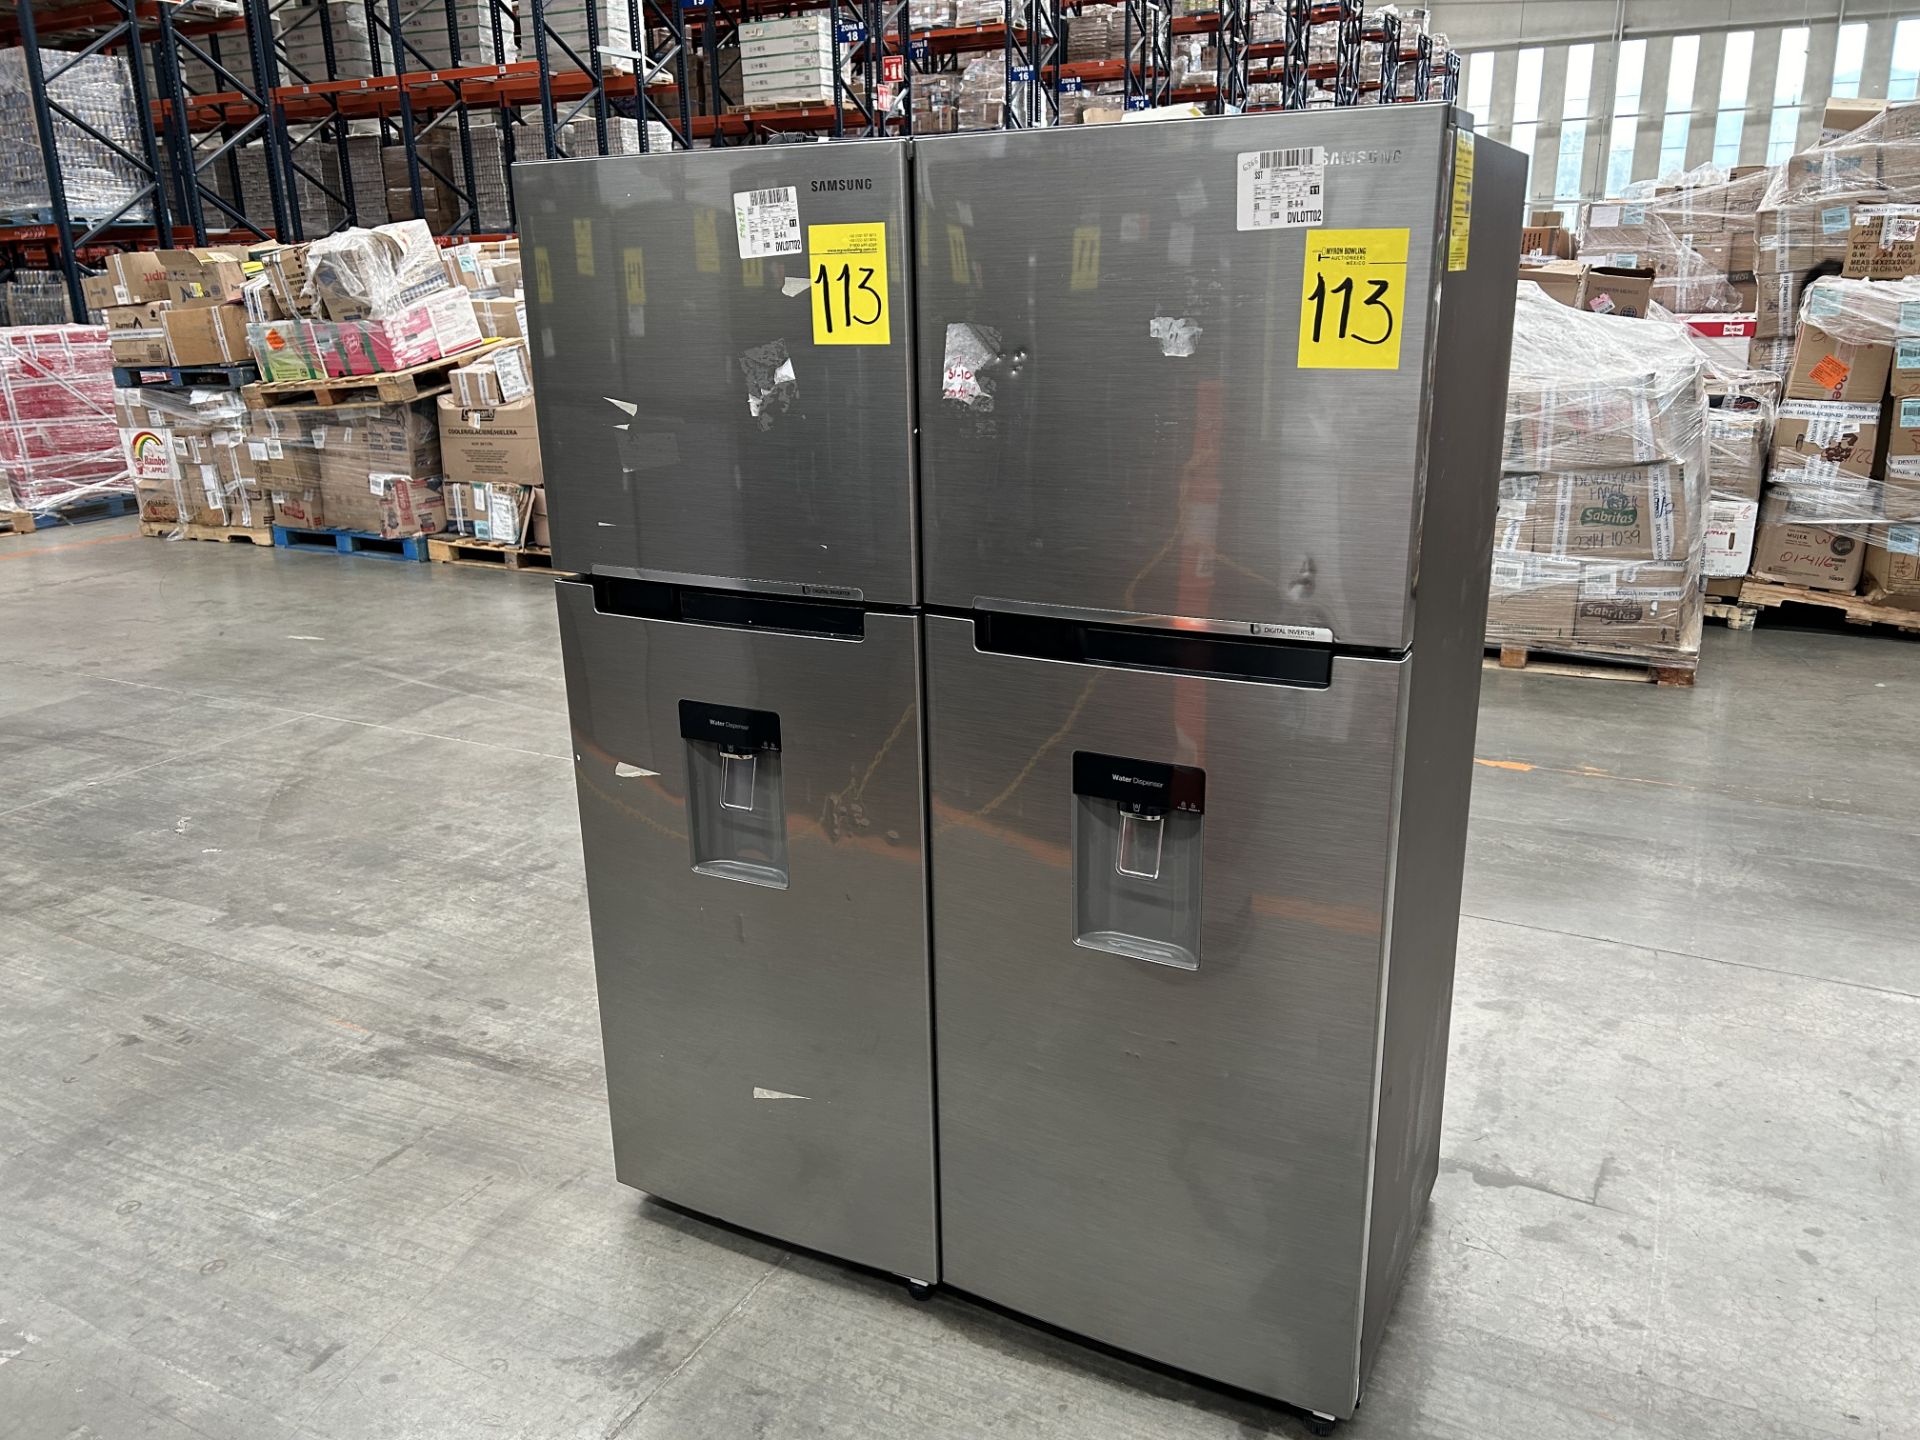 Lote de 2 refrigeradores contiene: 1 Refrigerador con dispensador de agua Marca SAMSUNG, Modelo RT2 - Image 2 of 6